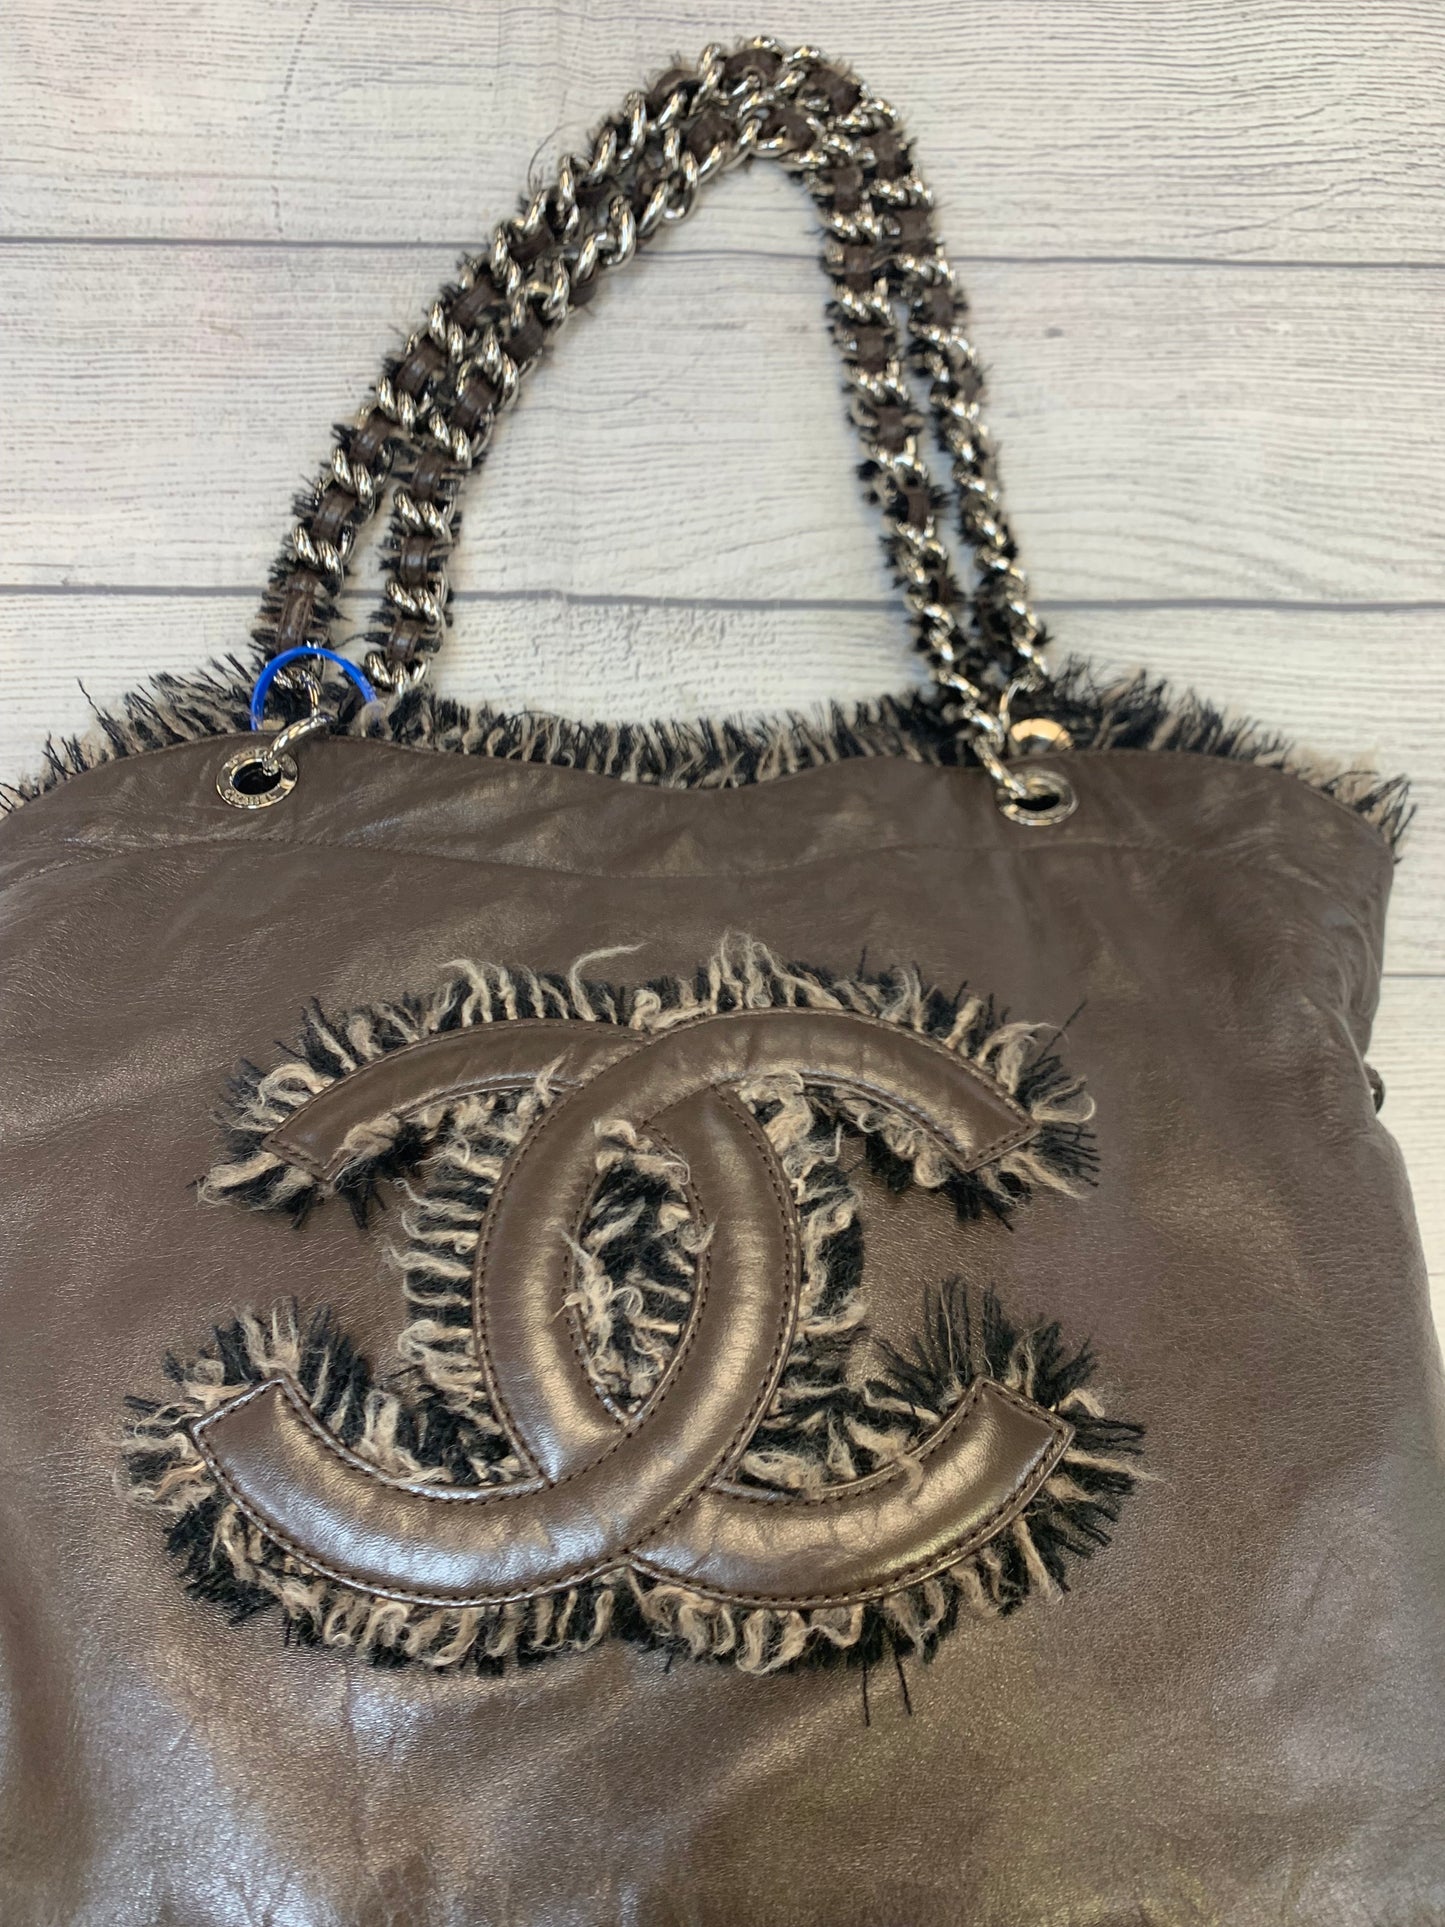 Handbag Designer By Chanel  Size: Large